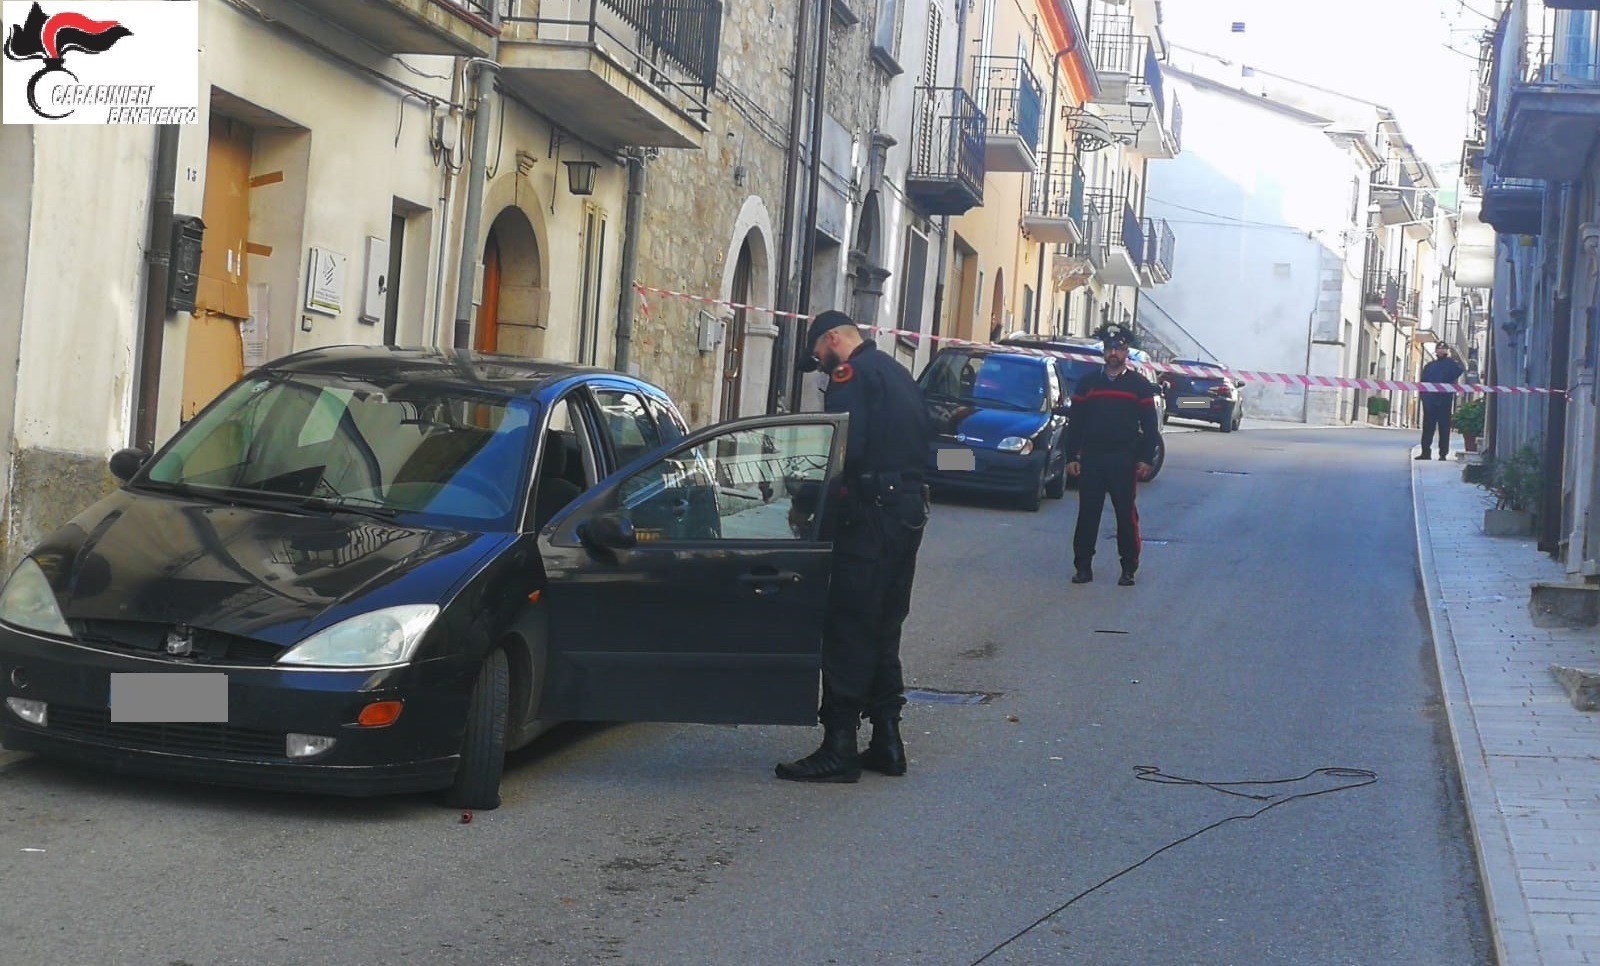 Escogitavano un’altra rapina ad un bancomat di San Bartolomeo in Galdo, Carabinieri sequestrano auto sospetta